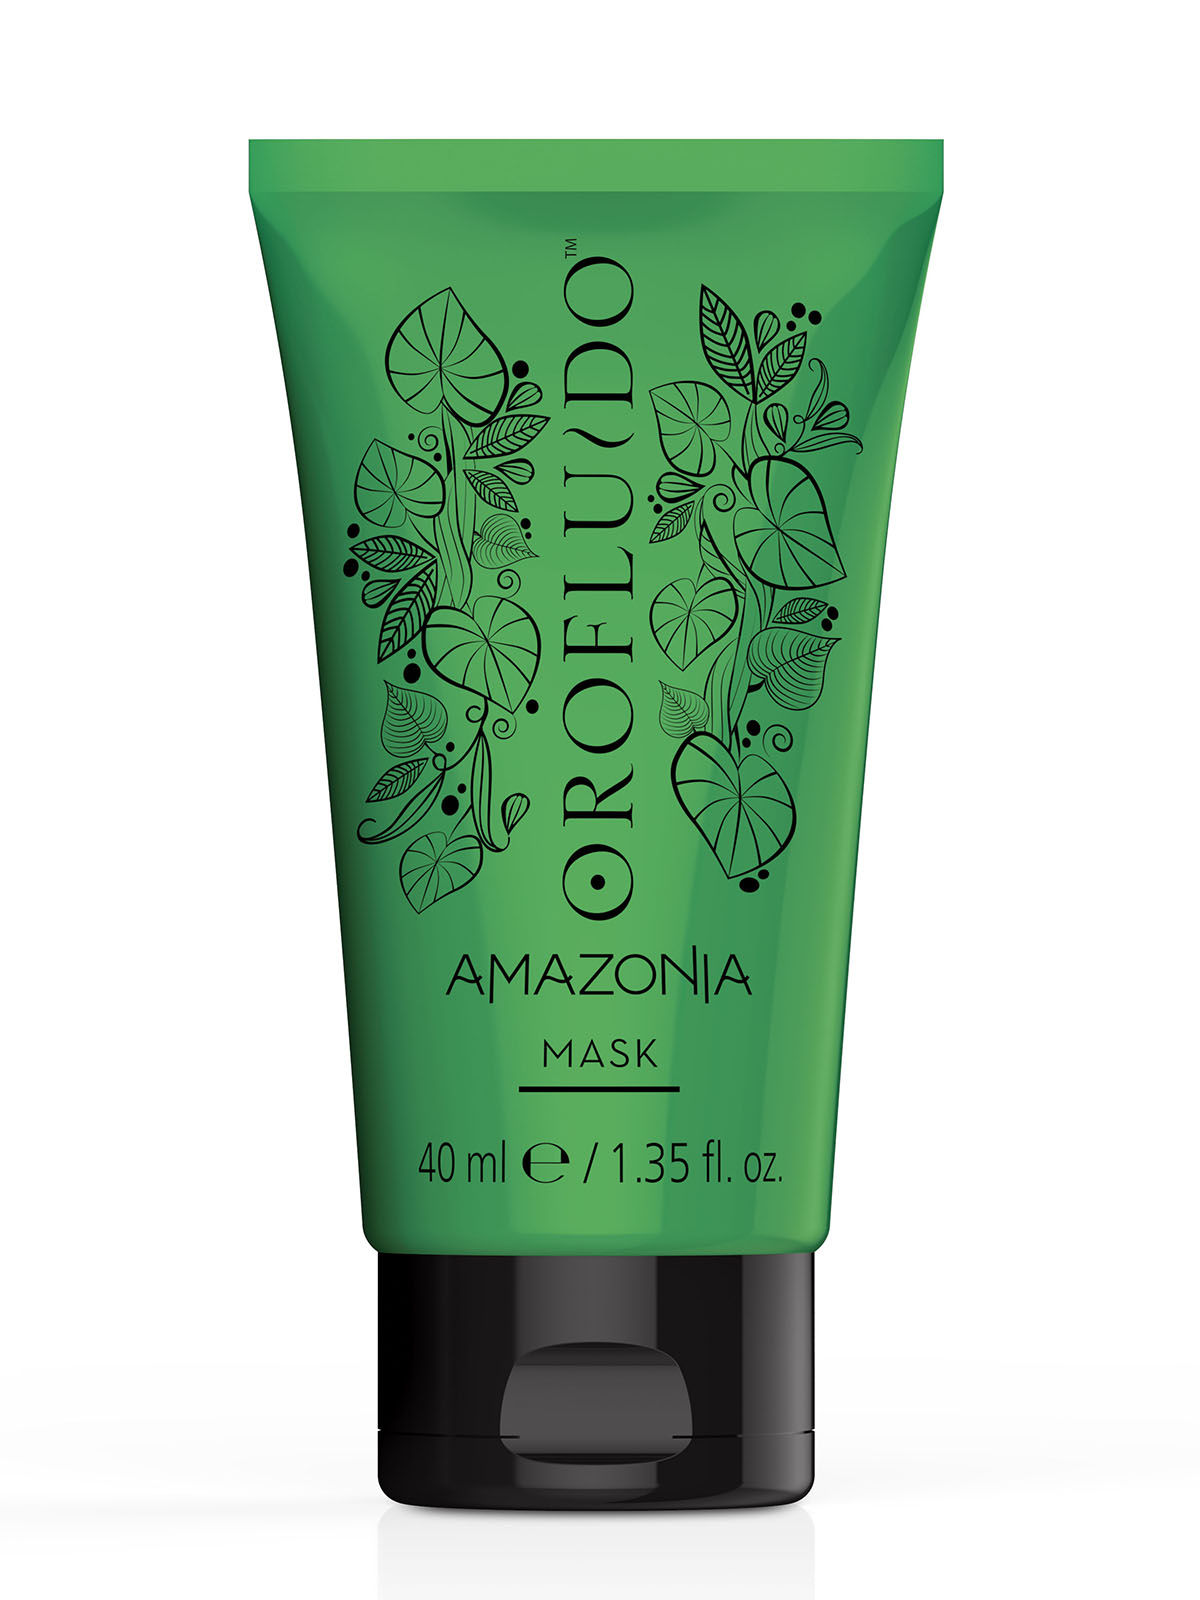 Orofluido amazonia маска для поврежденных волос 250 мл